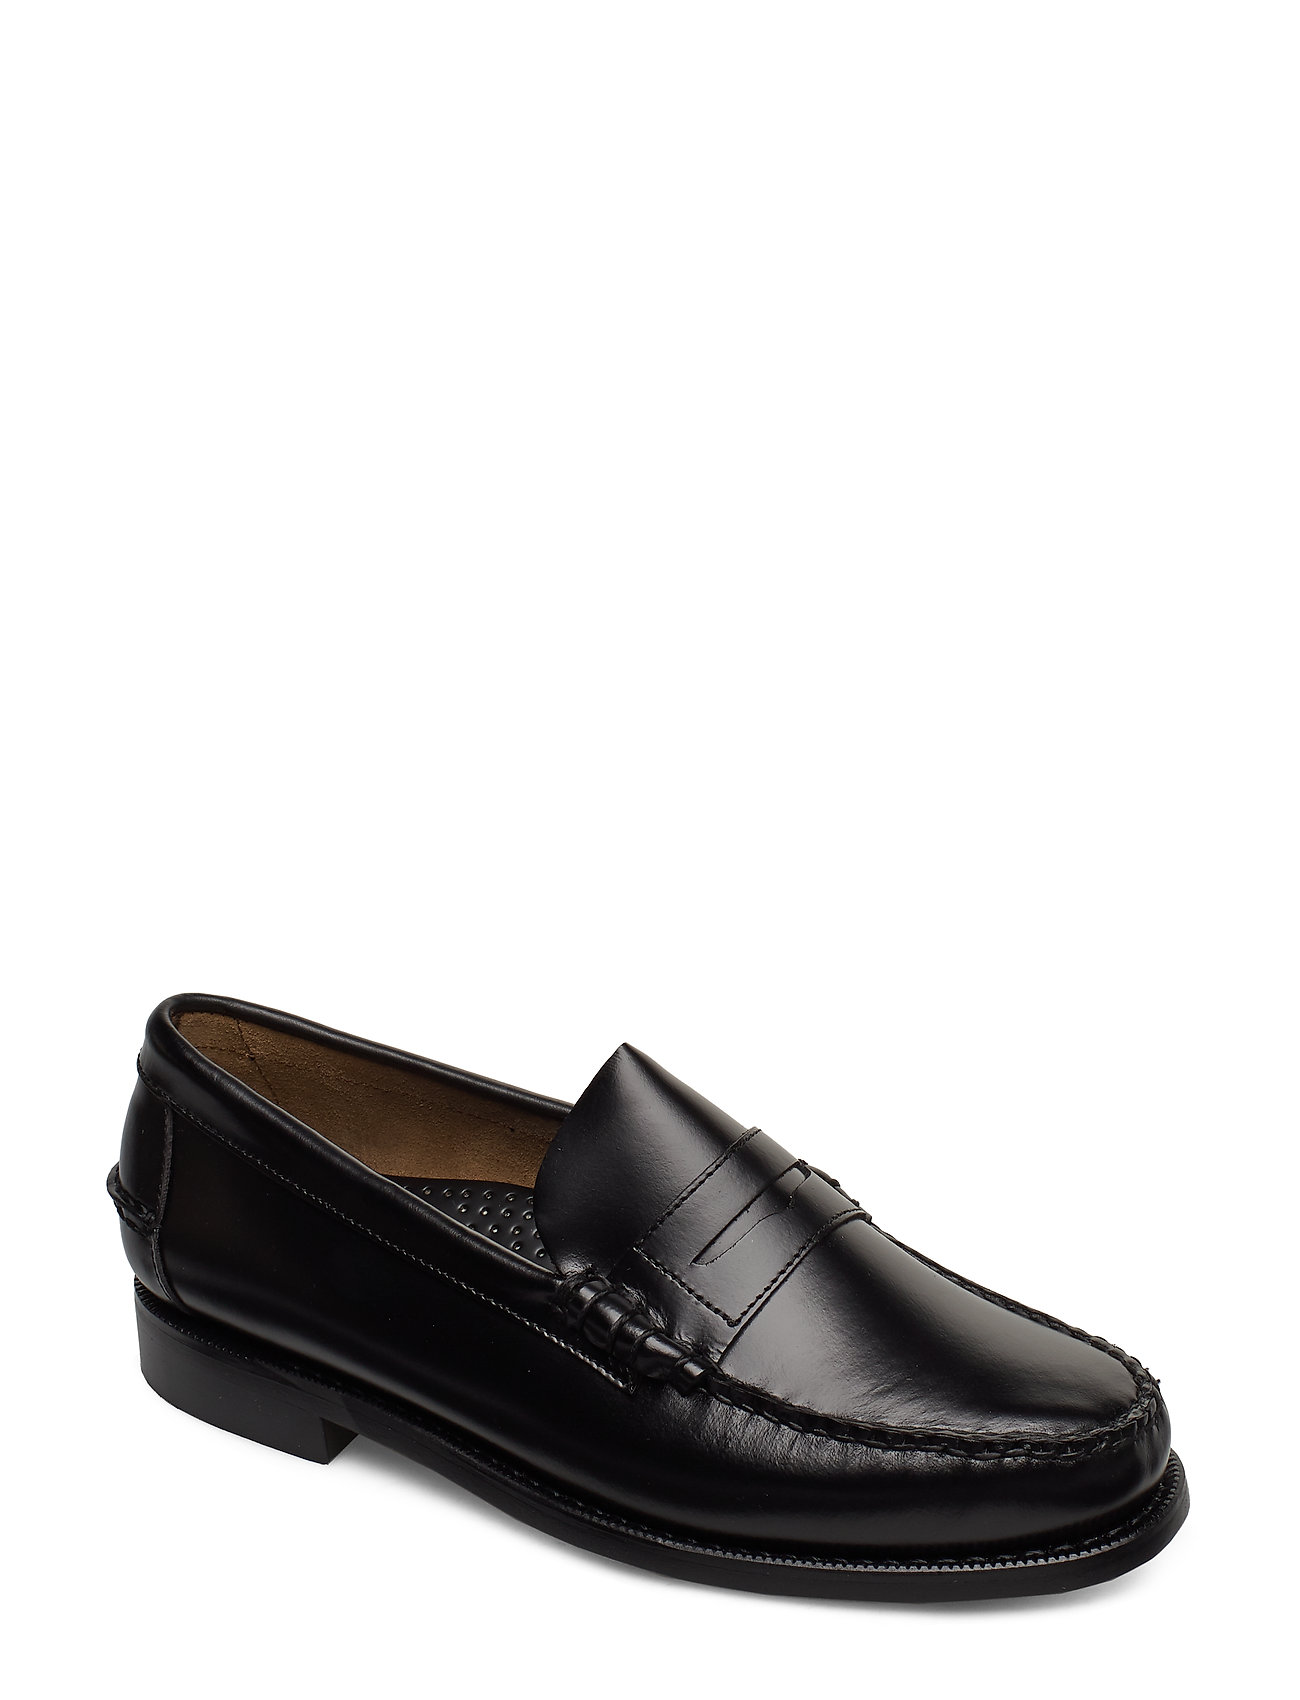 Sebago Classic - Business shoes | Boozt.com